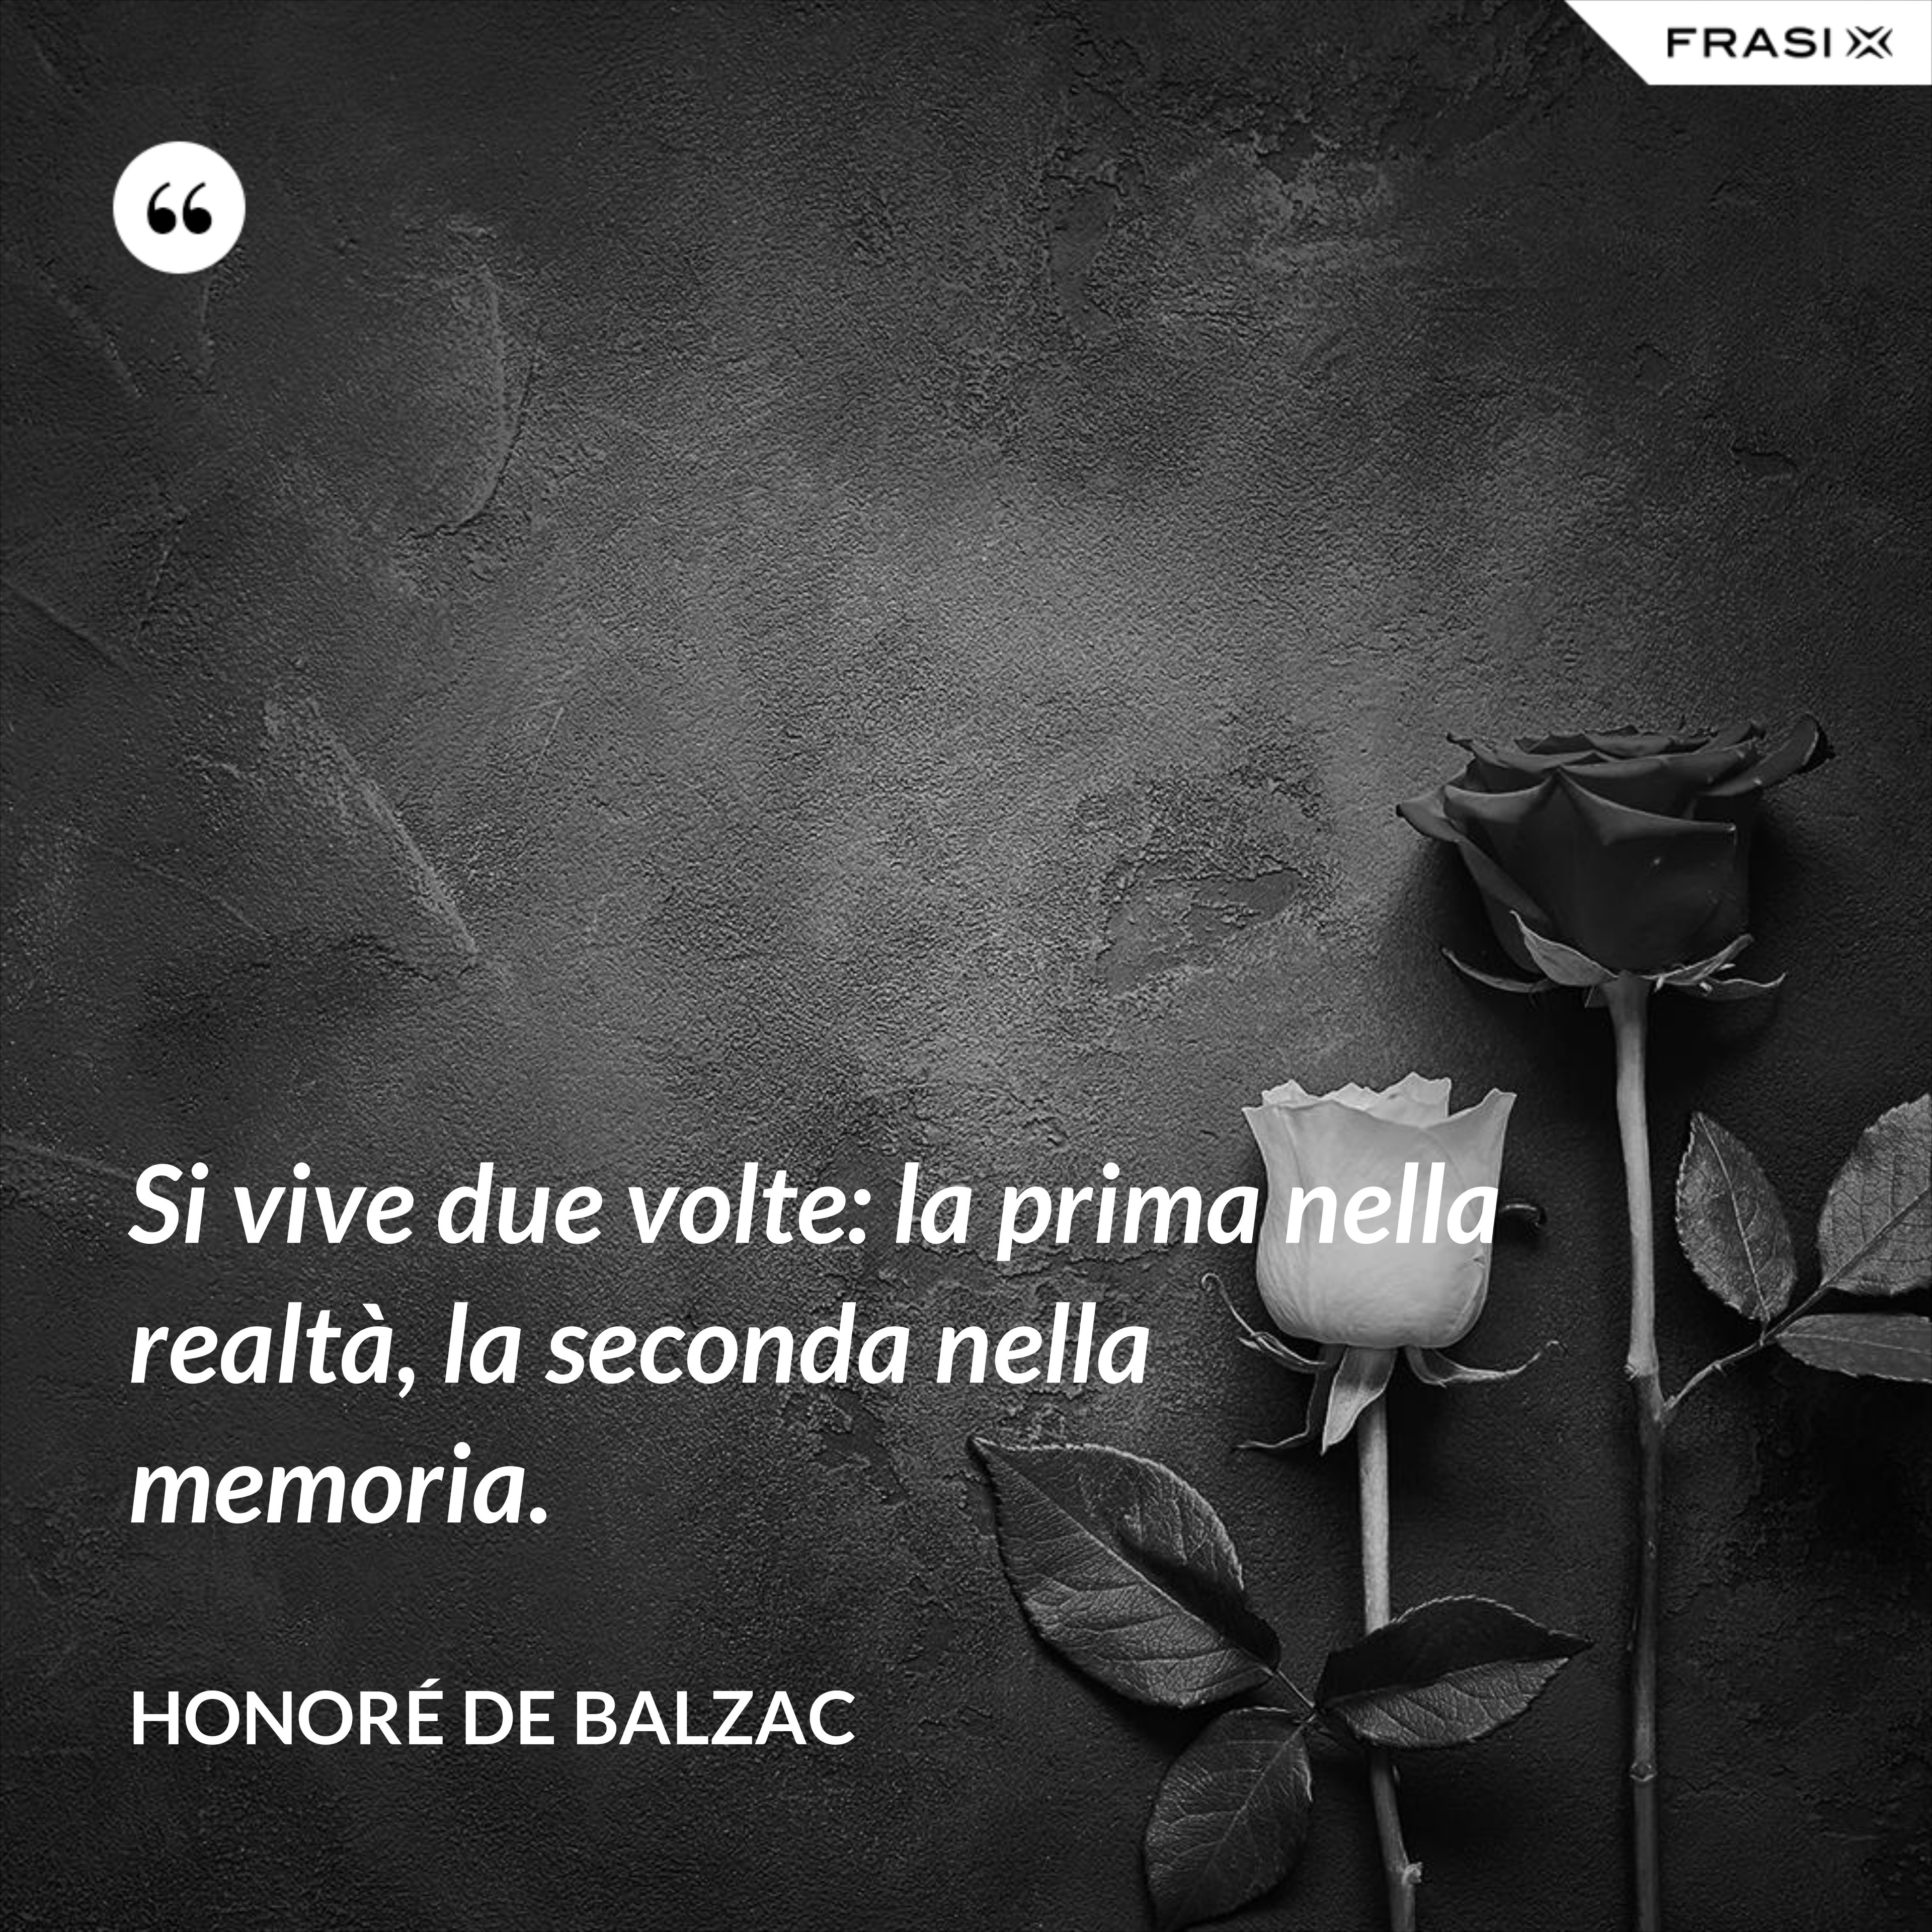 Si vive due volte: la prima nella realtà, la seconda nella memoria. - Honoré de Balzac